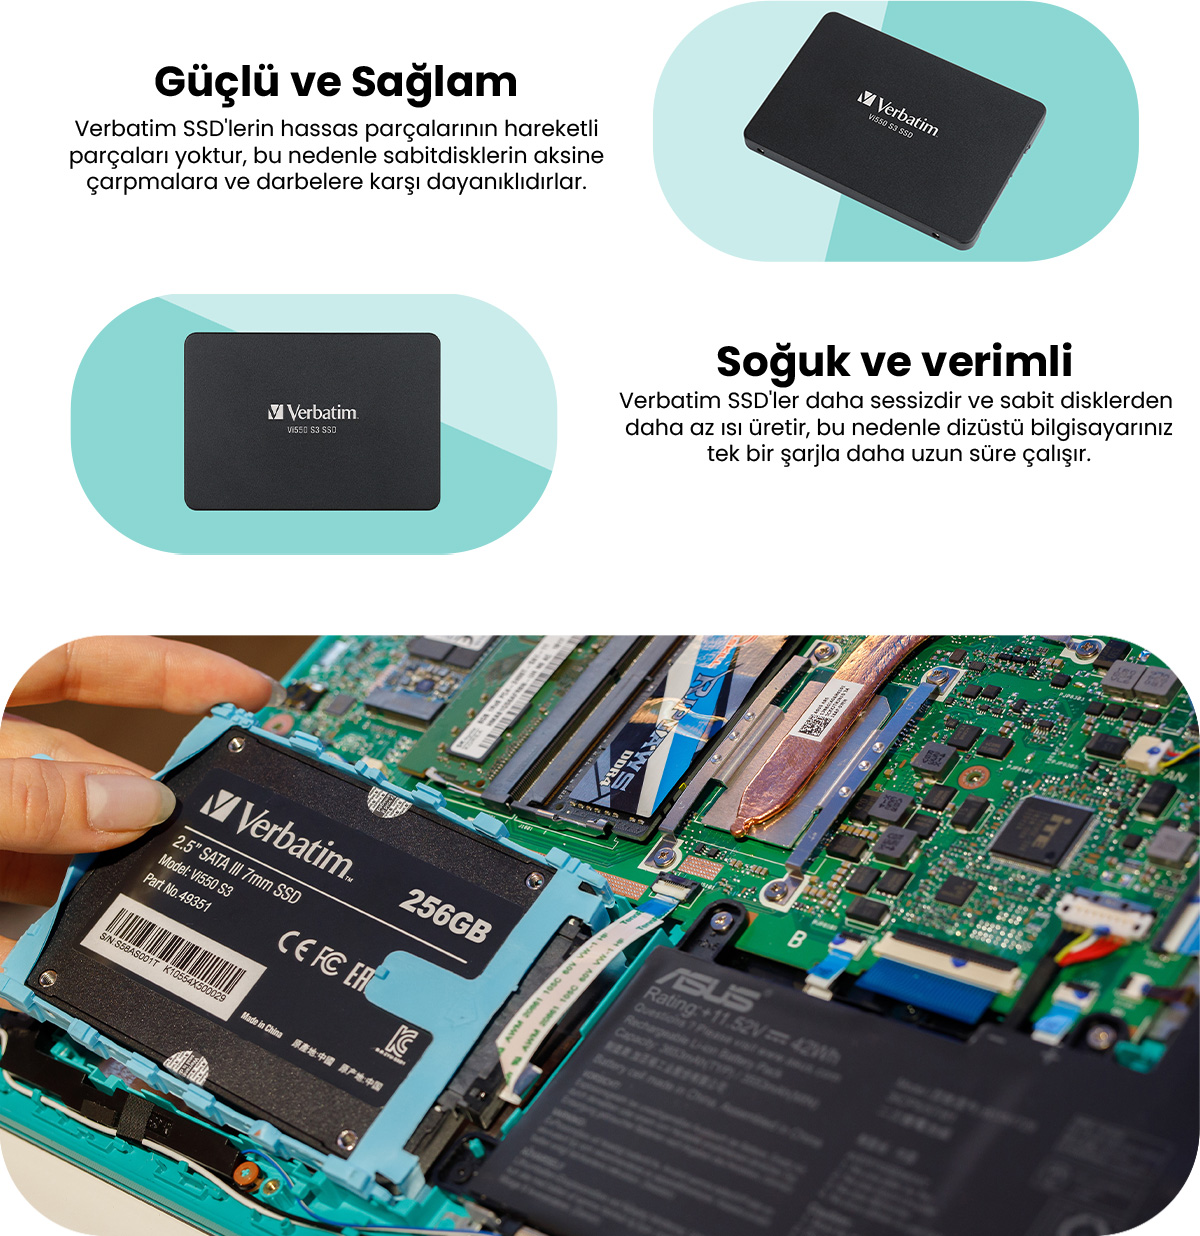 512GB S3 520MB-500MB/SN SSD 2.5\' Fiyatı VI550 Sata-3 Verbatim